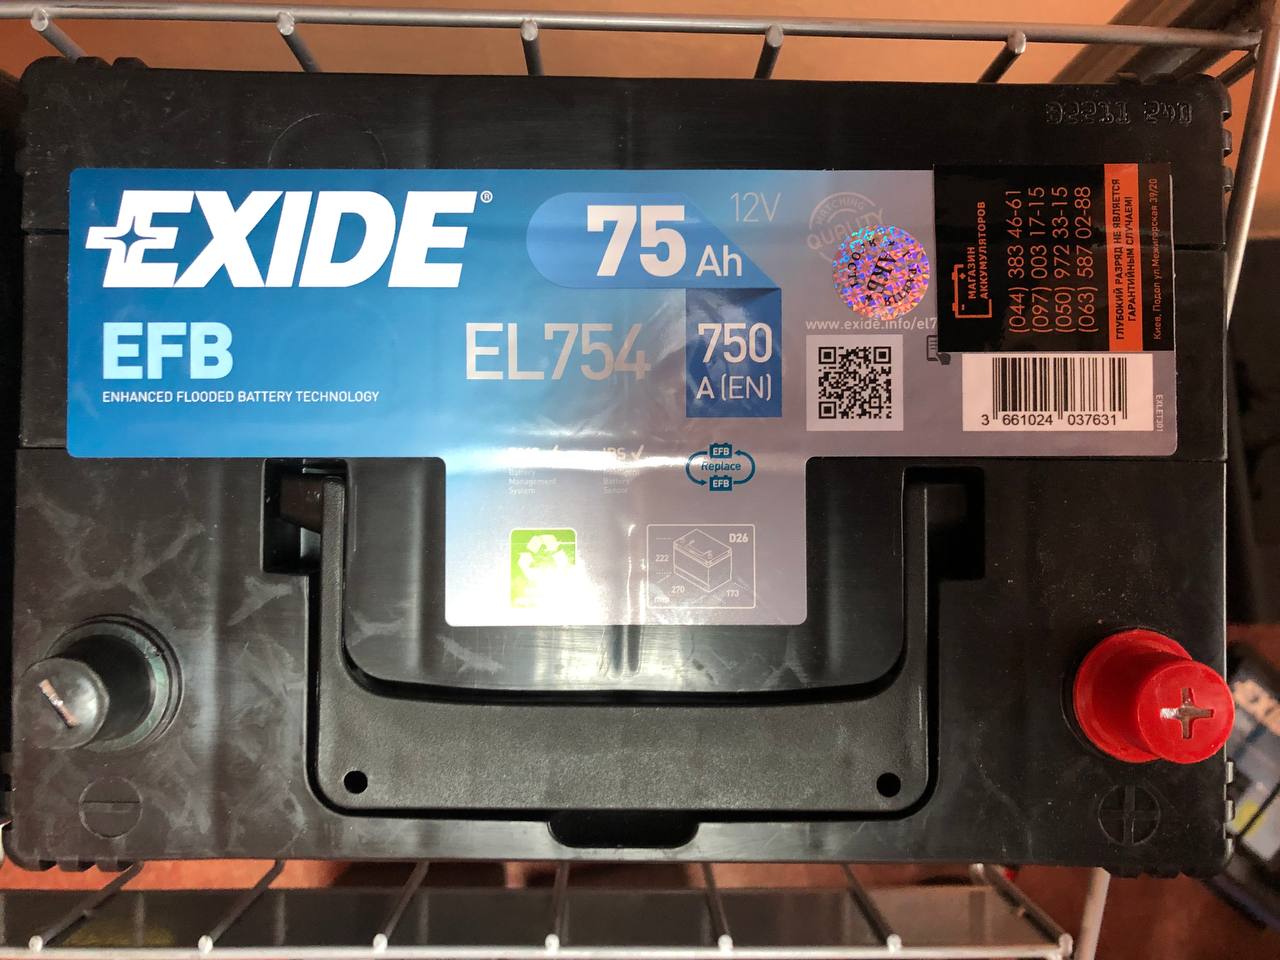 EXIDE EL754 EFB START-STOP Autobatterie Batterie Starterbatterie 12V 75Ah  EN750A 